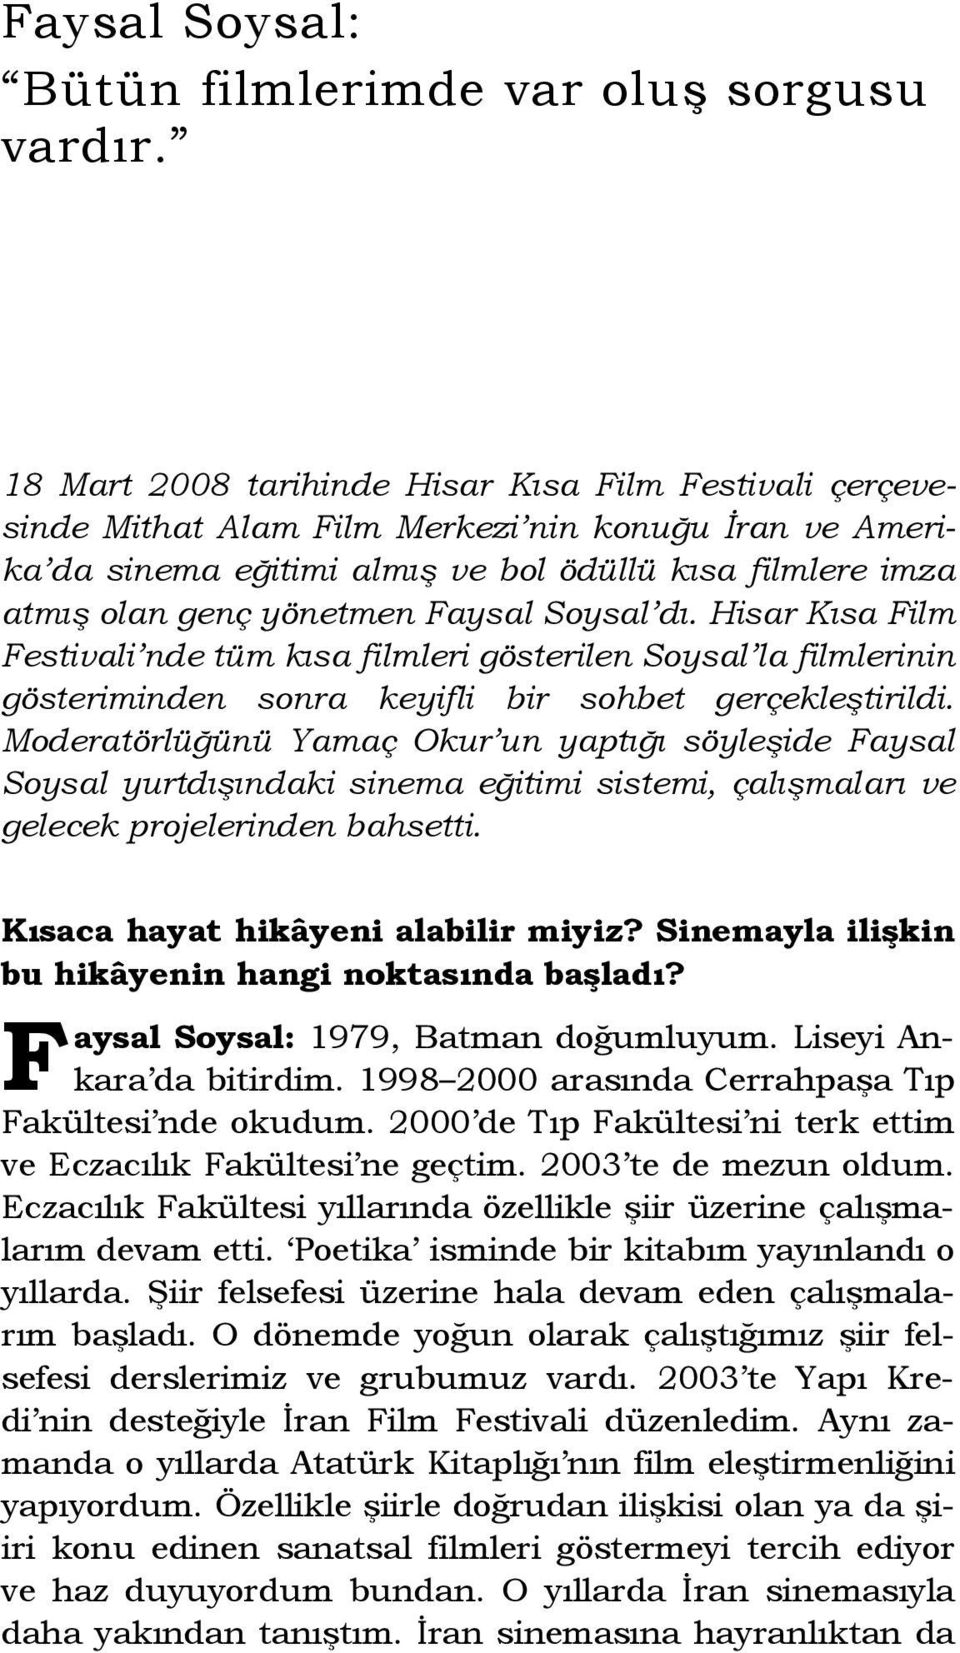 Faysal Soysal dı. Hisar Kısa Film Festivali nde tüm kısa filmleri gösterilen Soysal la filmlerinin gösteriminden sonra keyifli bir sohbet gerçekleştirildi.